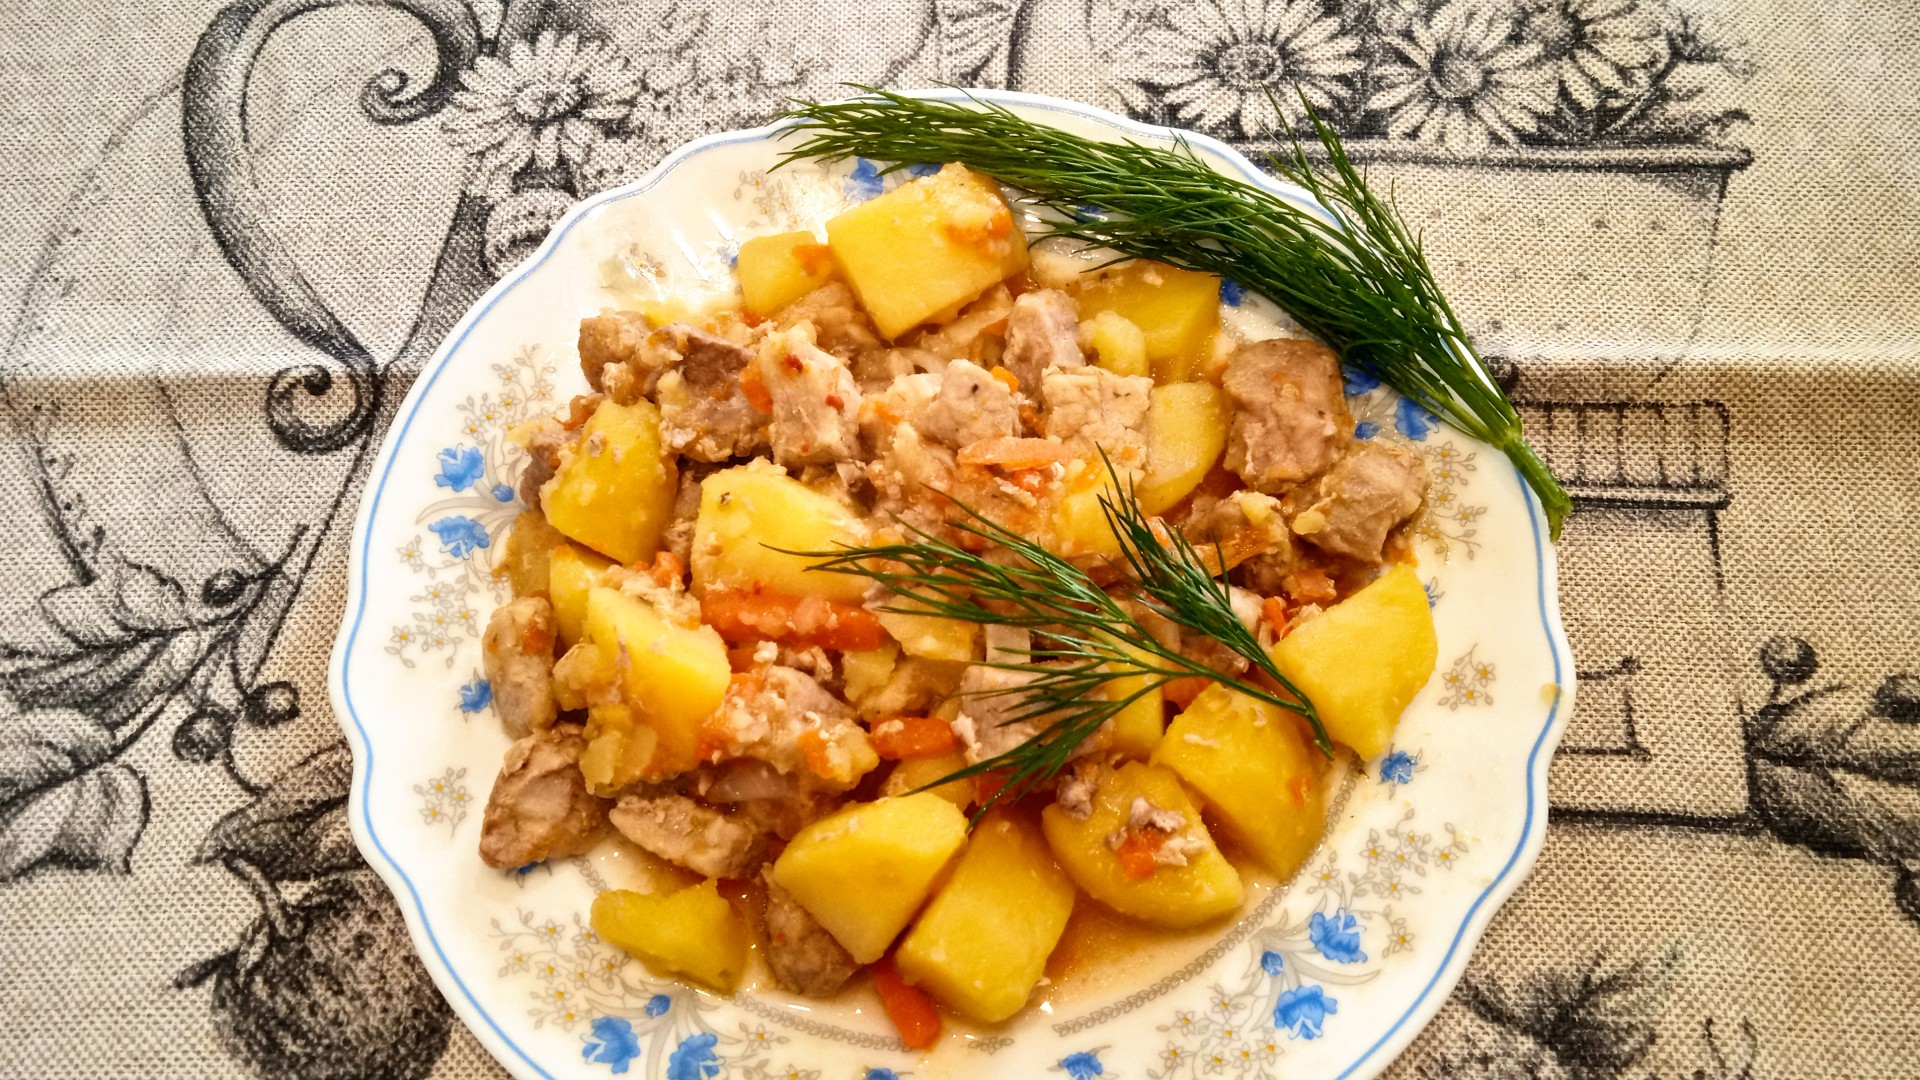 Татарское блюдо с мясом и картошкой